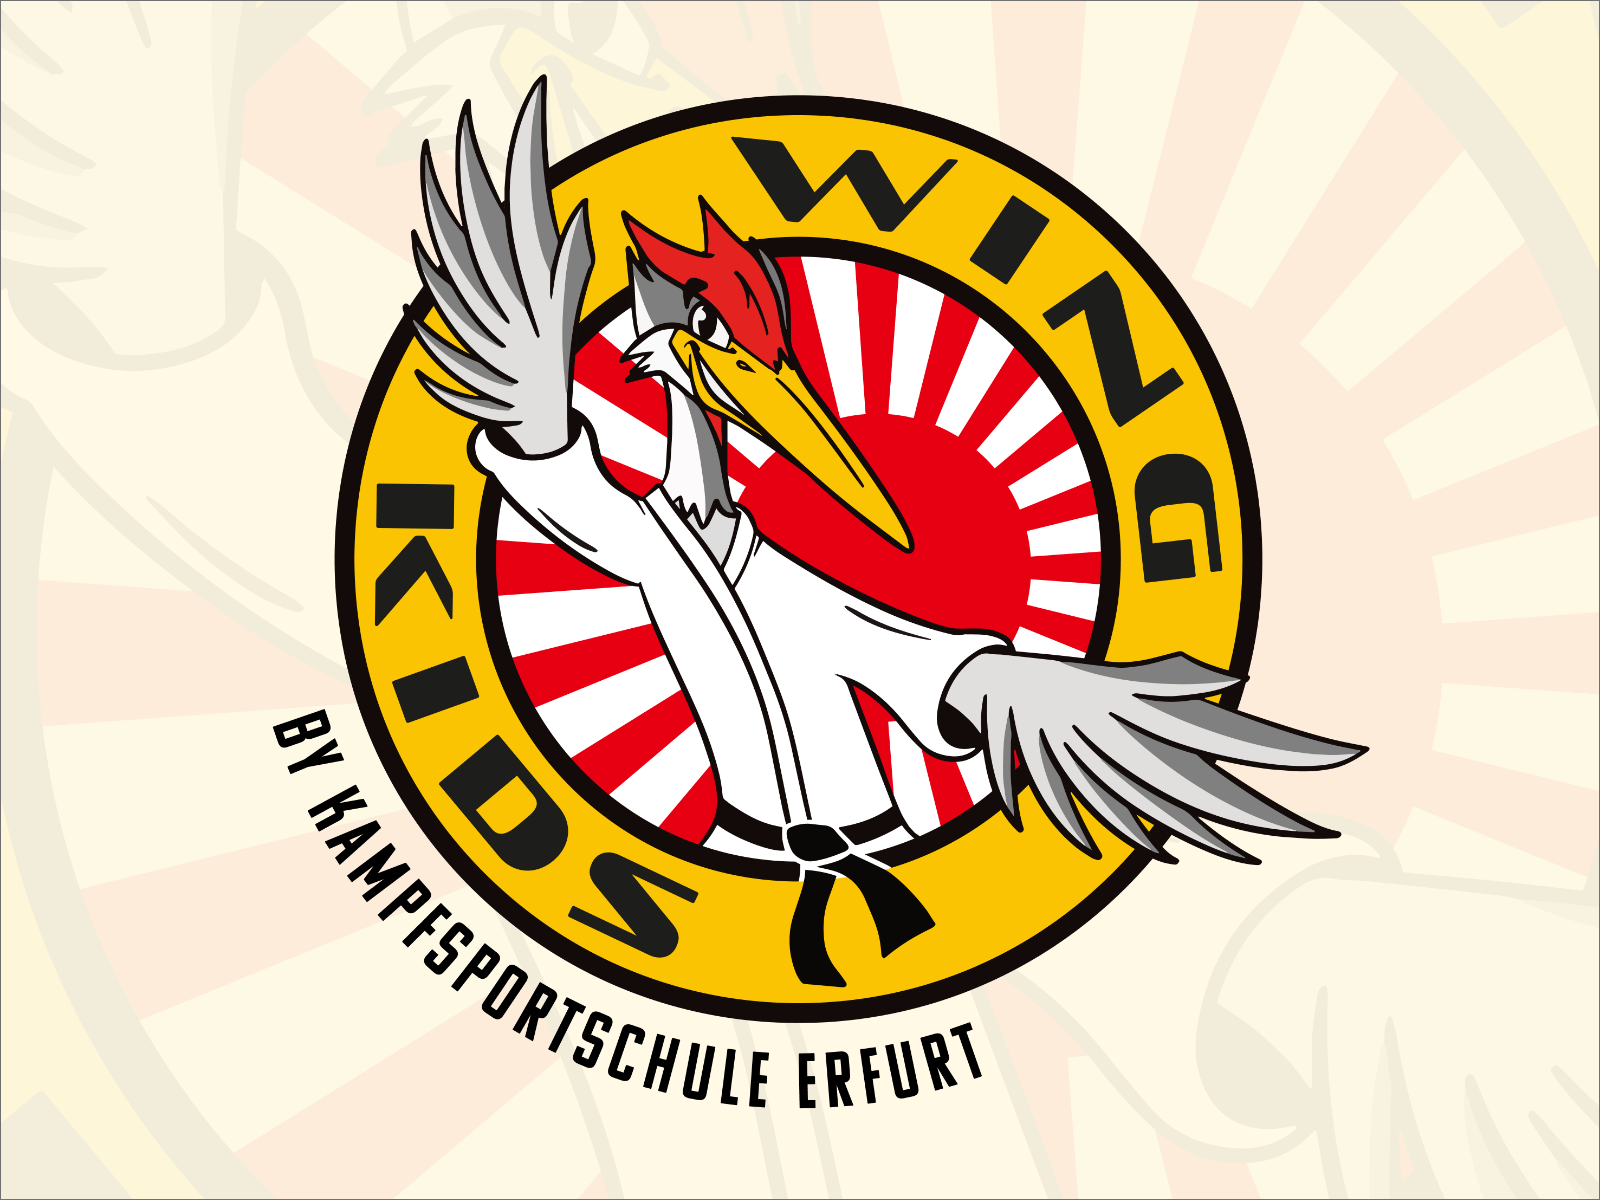 Wing Kids by Kampfsportschule Erfurt Logo